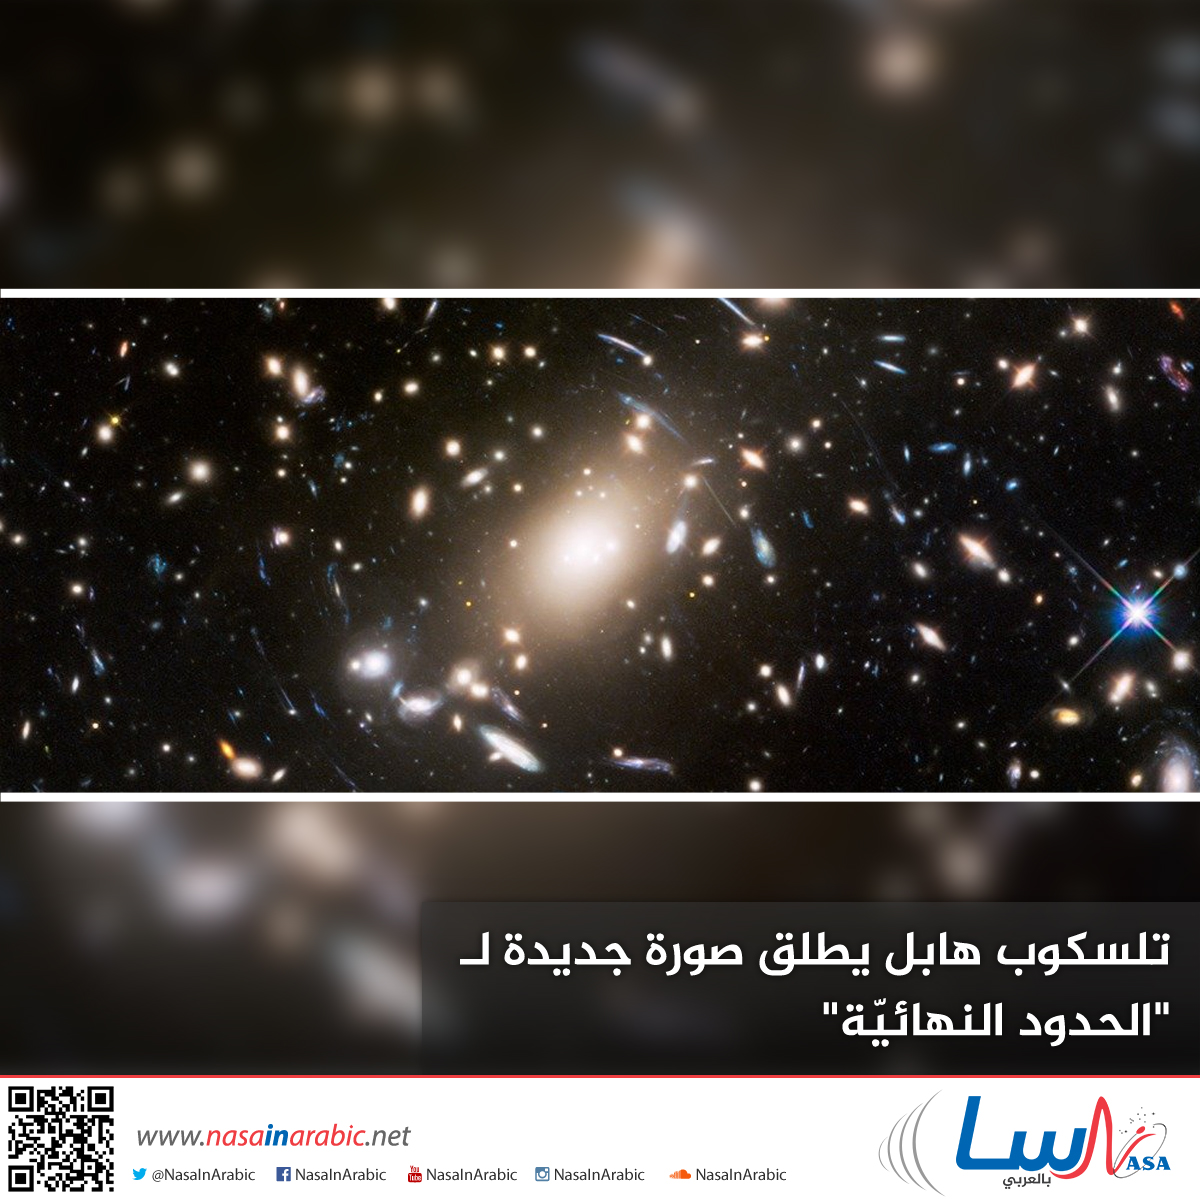 تلسكوب هابل ينشر صورة جديدة لحواف الكون المرئي